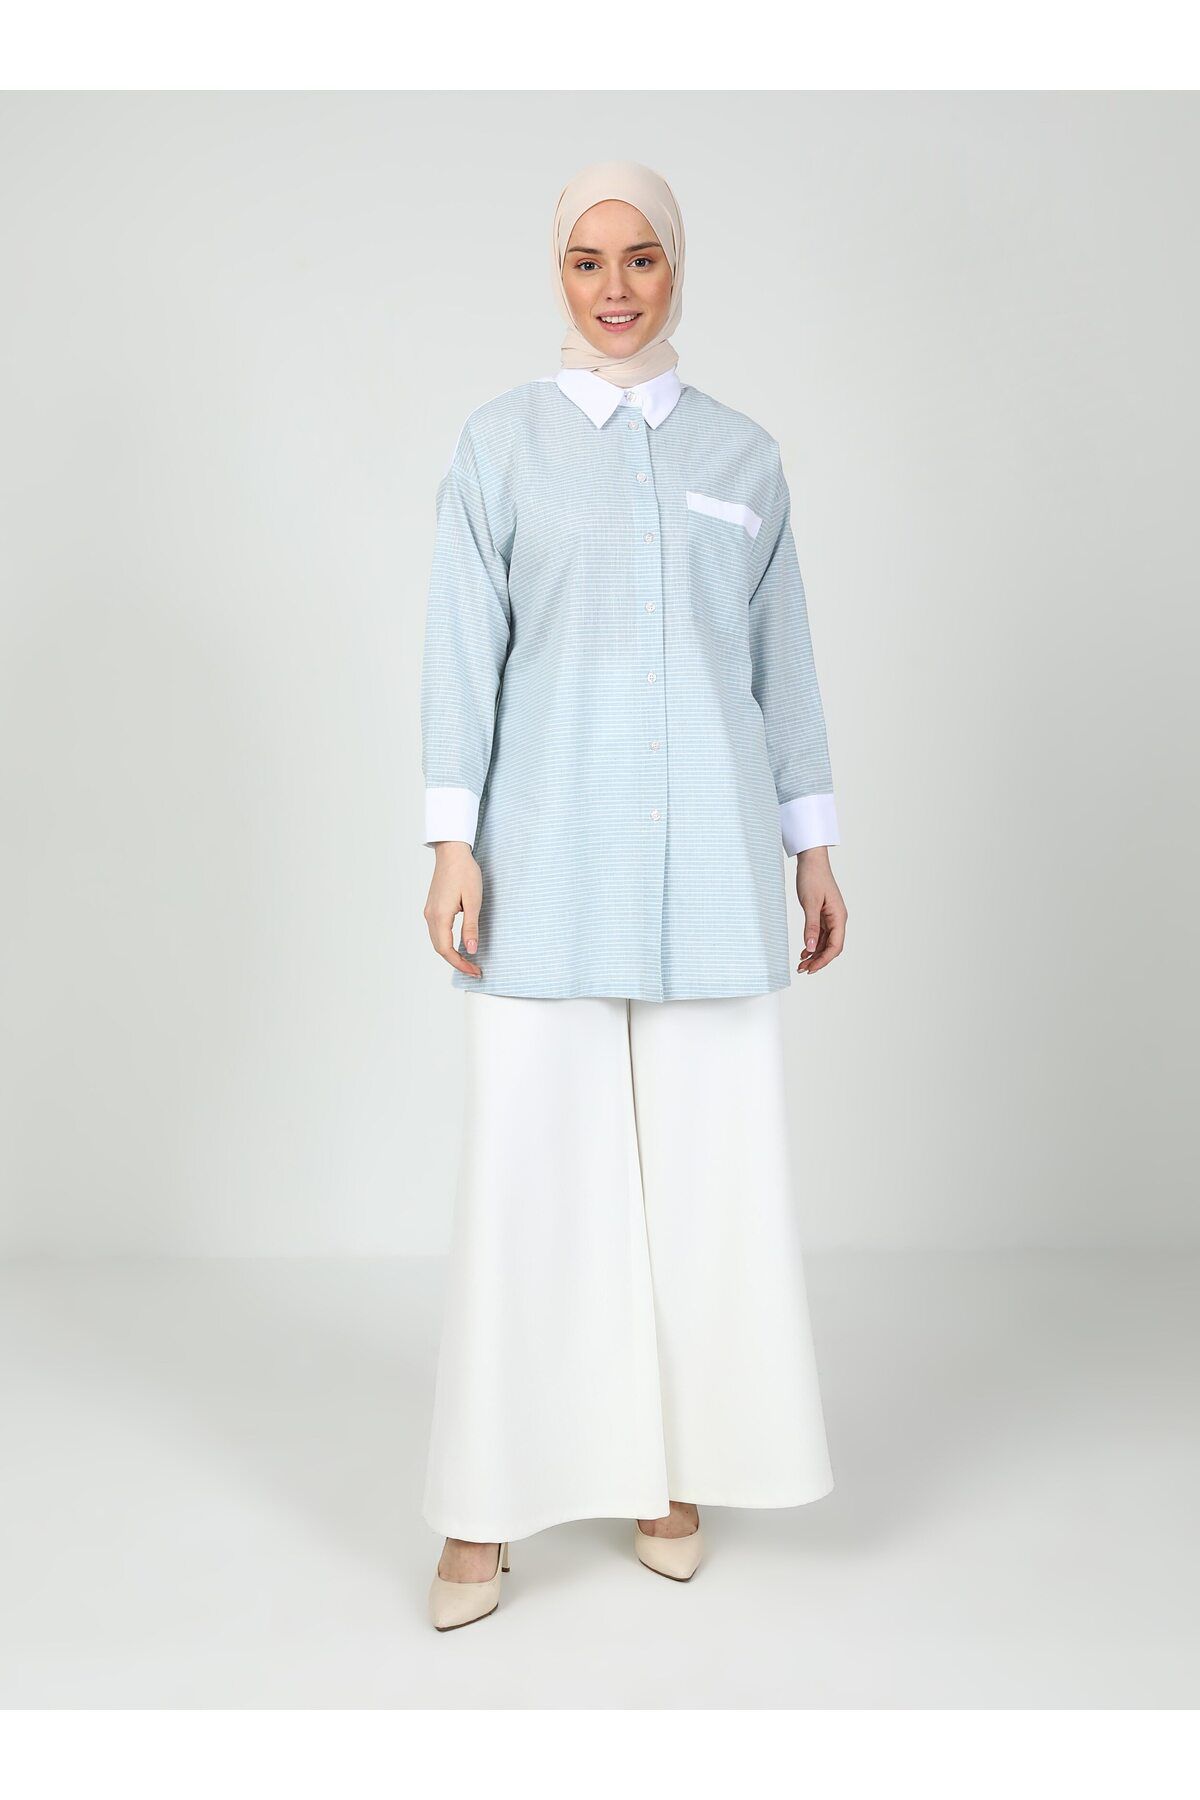 Tavin Renk Bloklu Bluz / Gömlek - Mavi Çizgili-Beyaz- Tavin